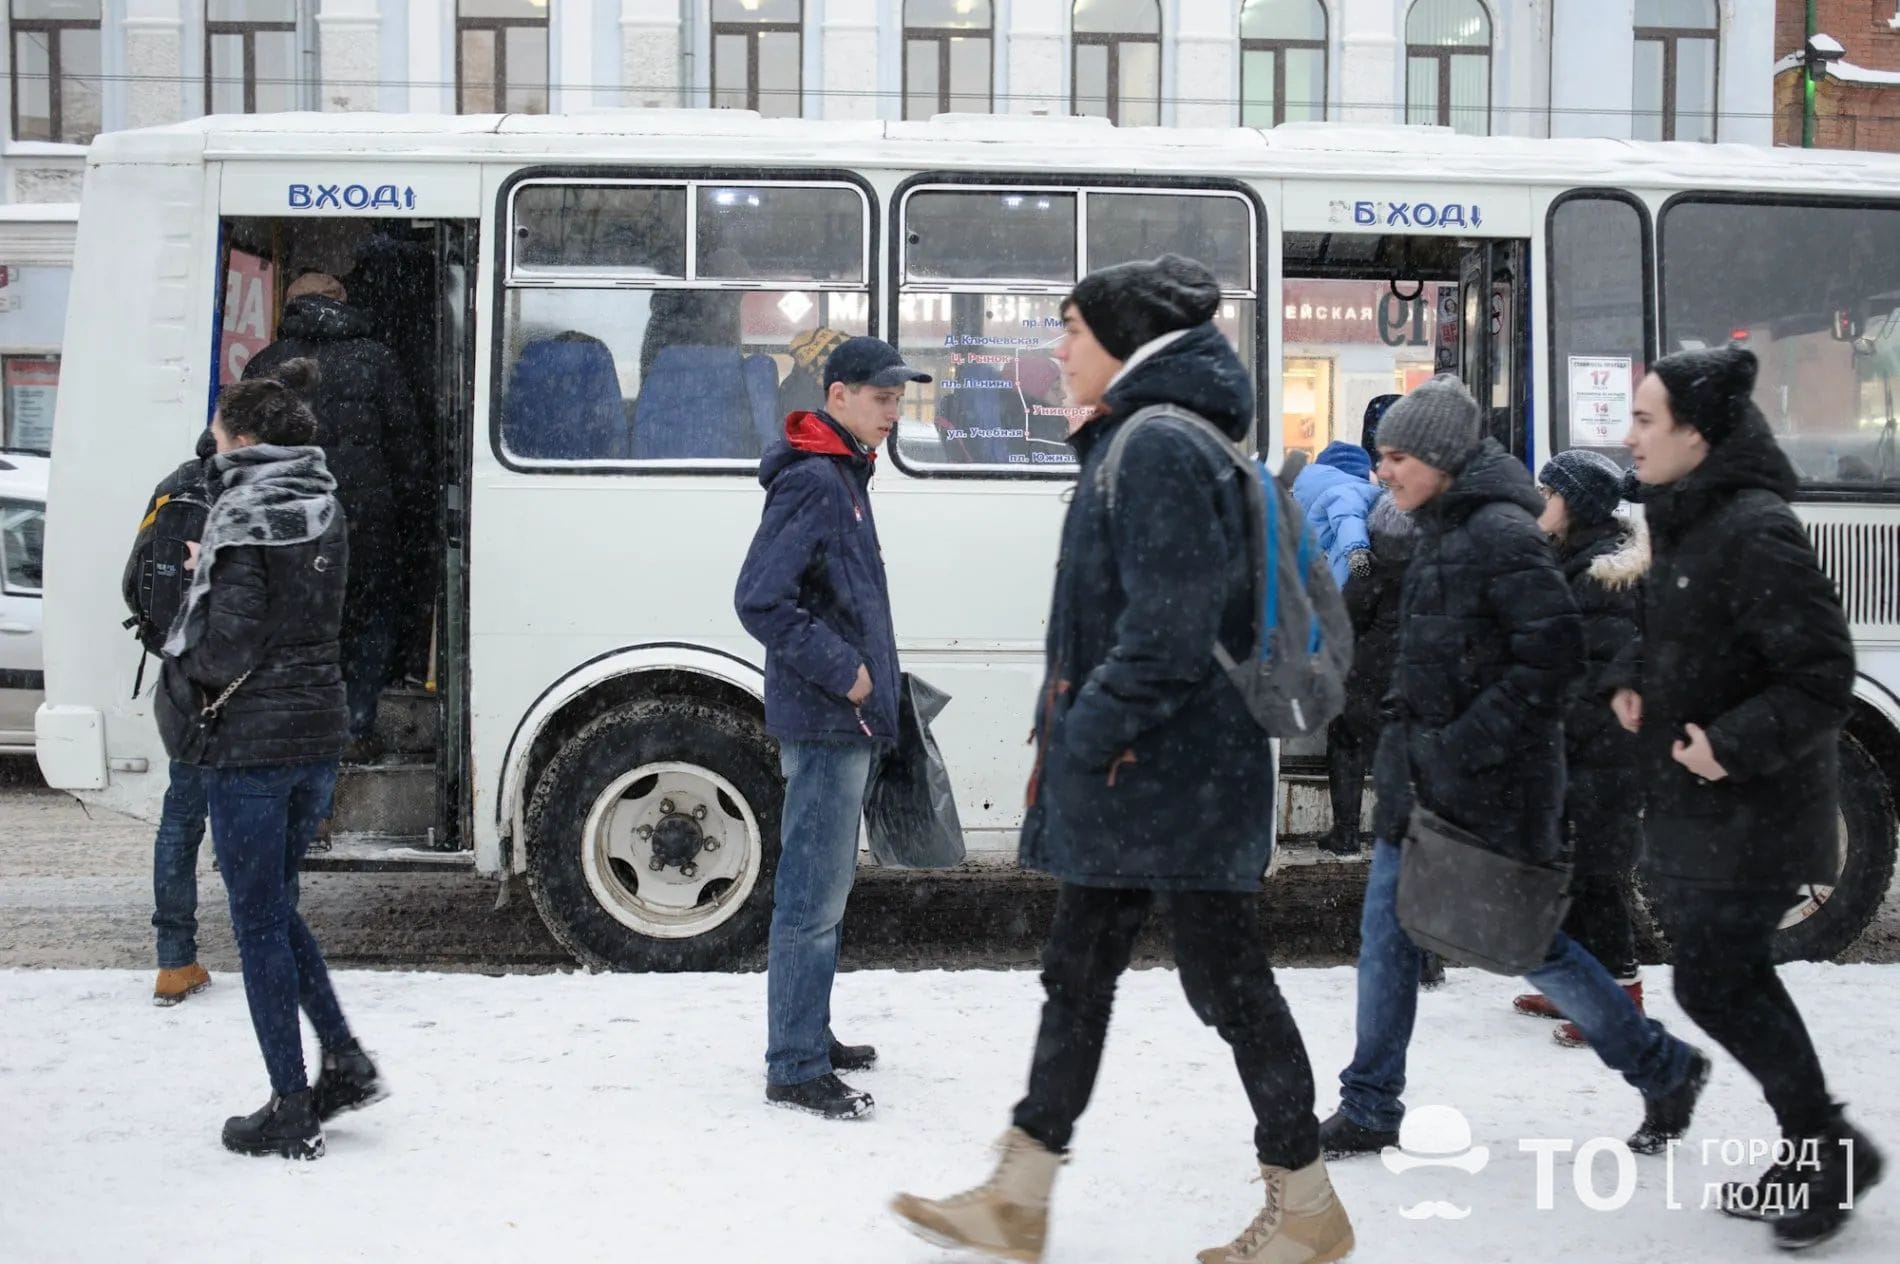 Общественный транспорт, Томские новости, общественный транспорт общественные обсуждения автобус повышение тарифов В Томске обсудят вопросы повышения тарифов в общественном транспорте